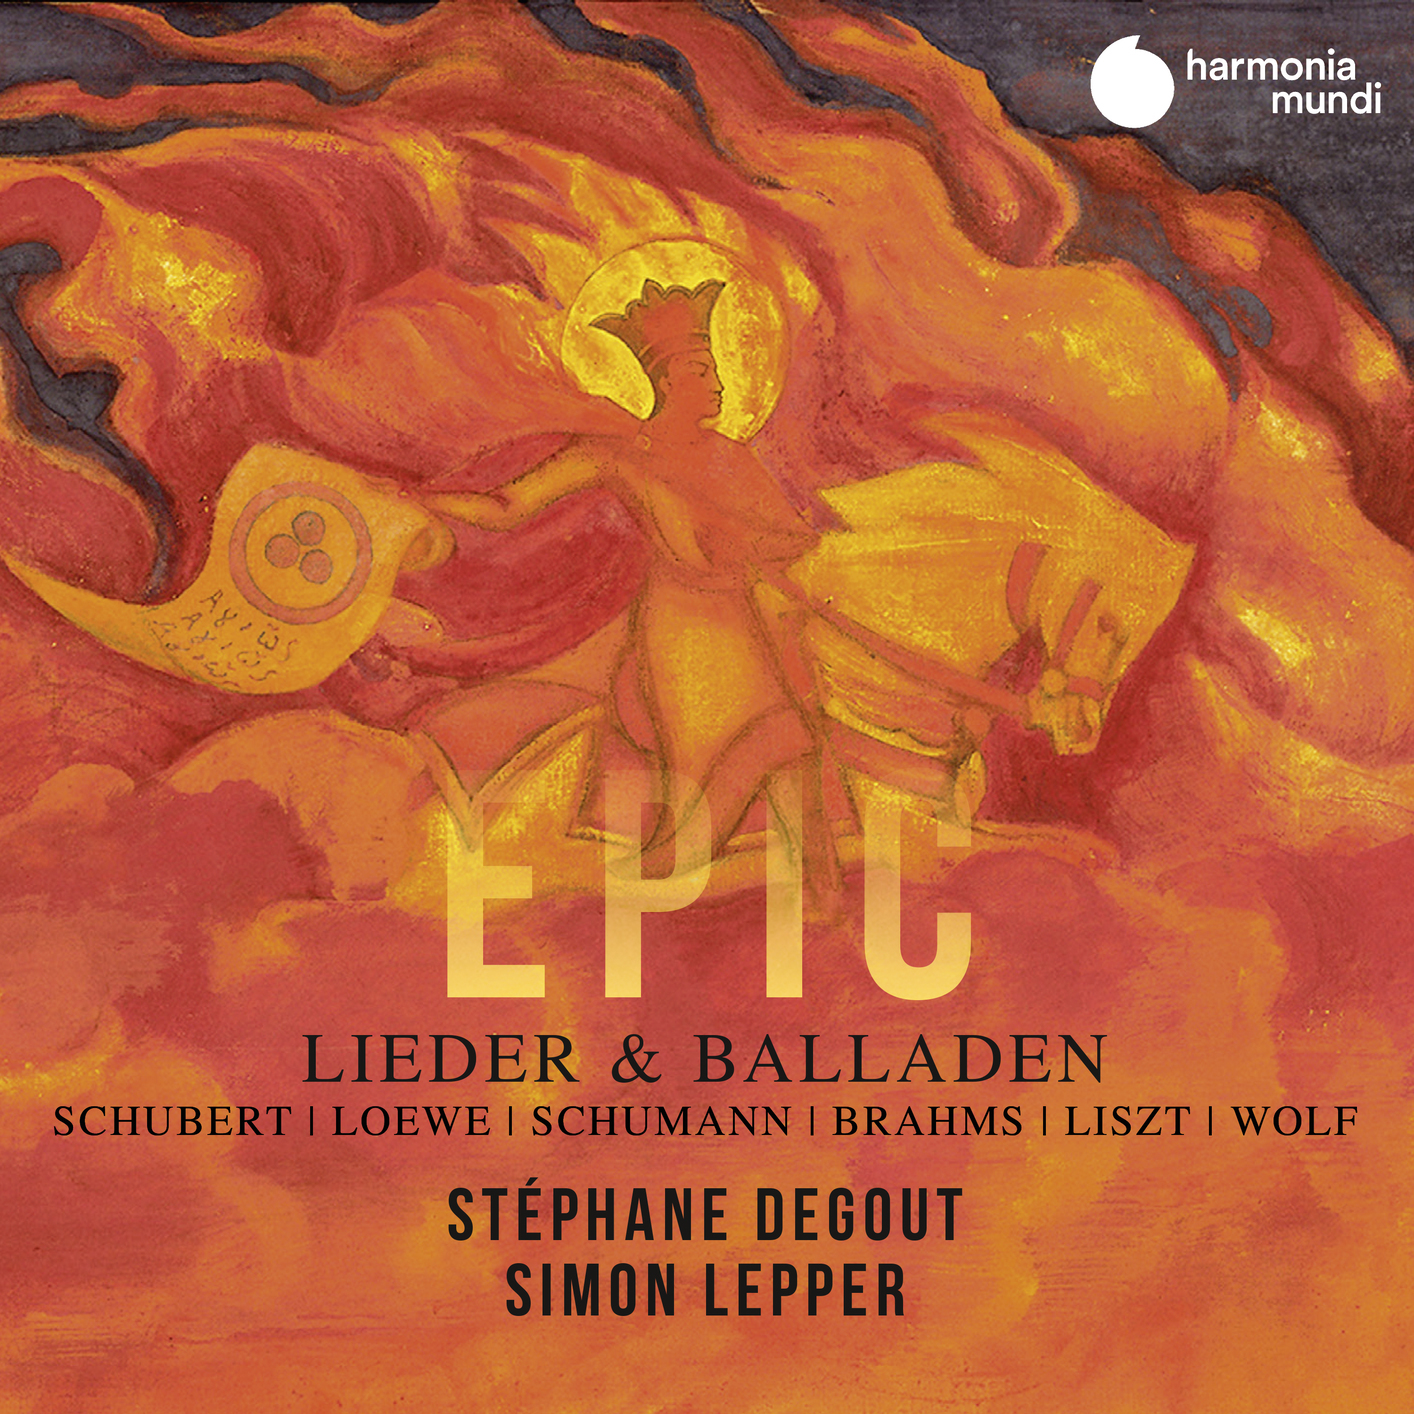 Stephane Degout & Simon Lepper - Lieder & Balladen (2020) [FLAC 24bit/96kHz]